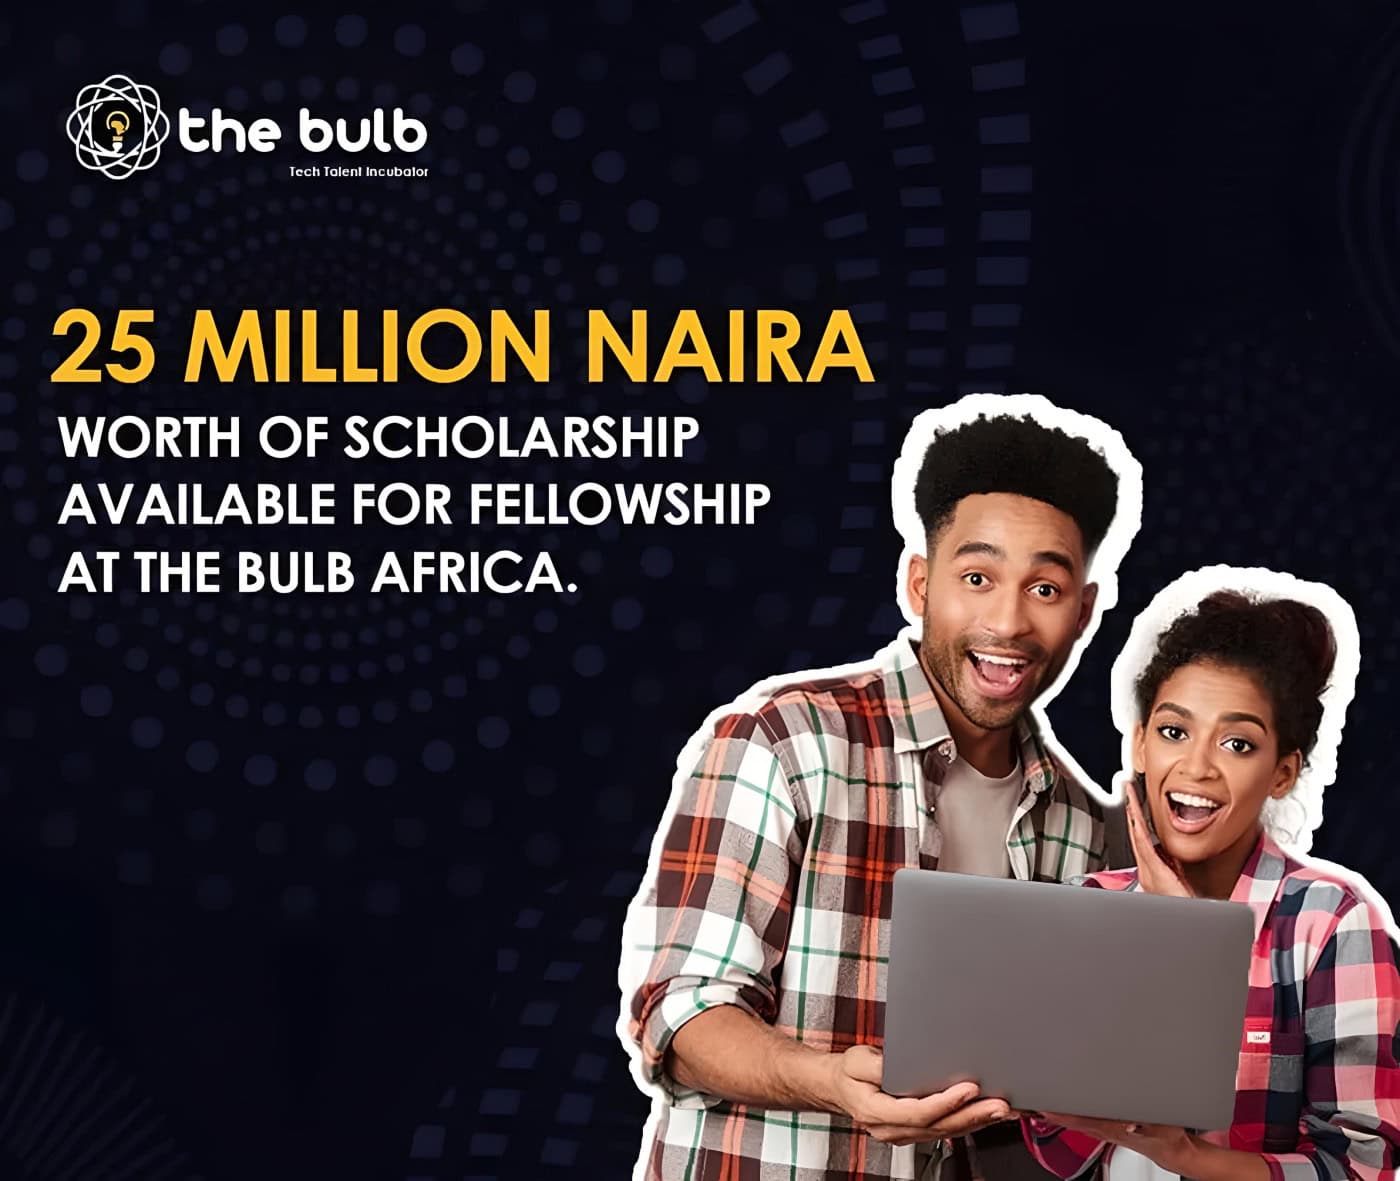 The Bulb Africa Fellowship